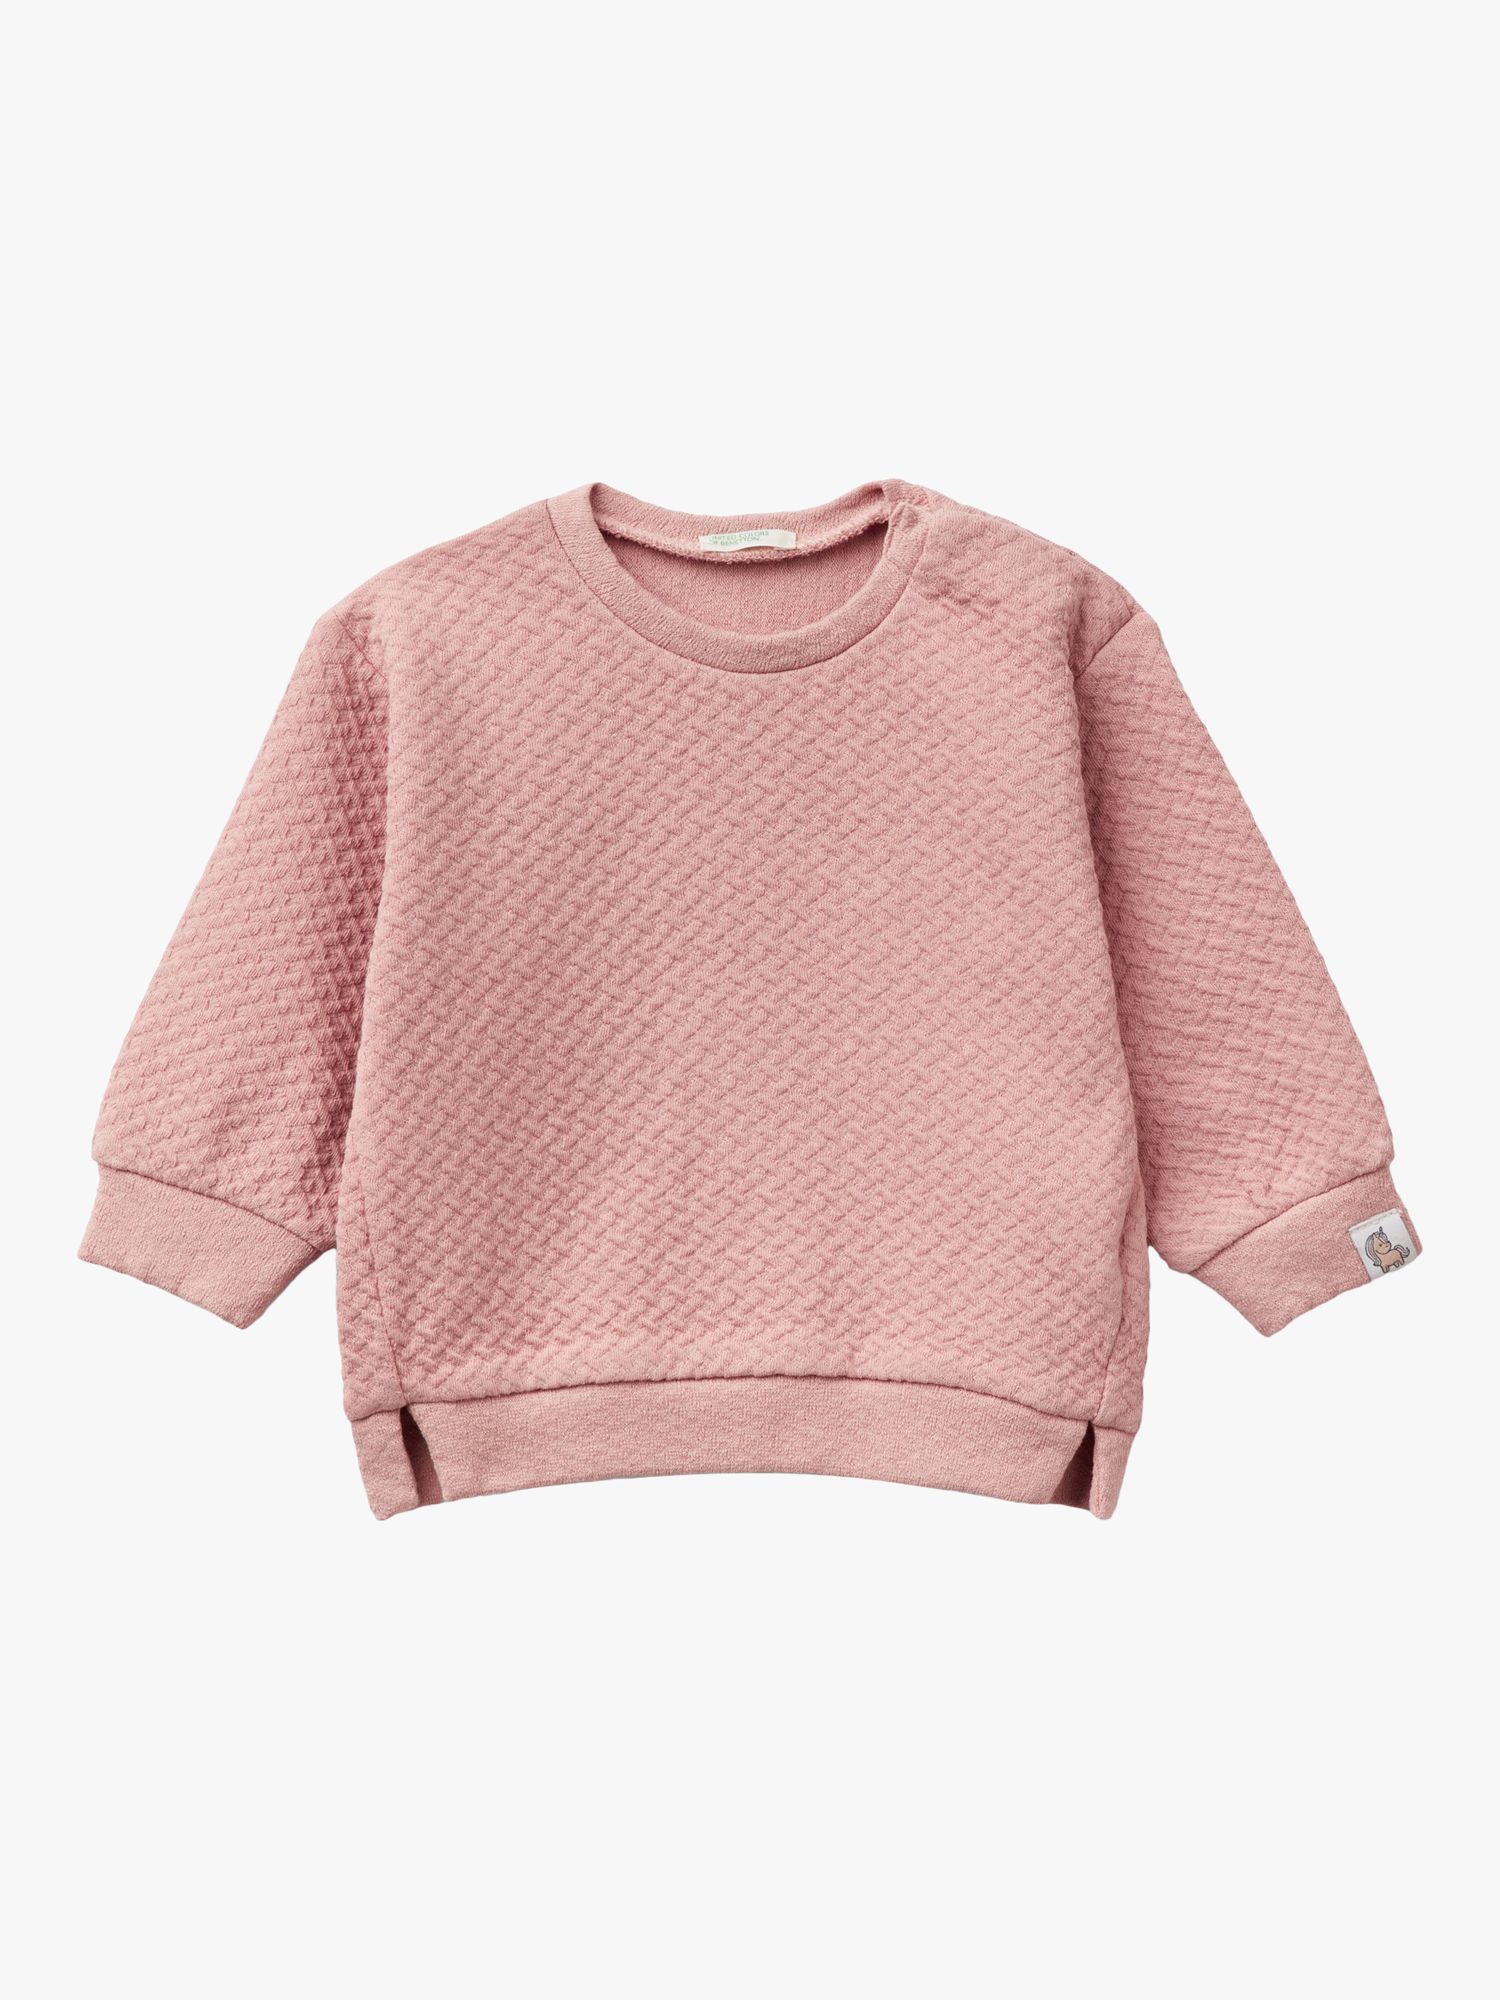 Benetton Baby Jacquard Textured Sweatshirt, Dark Powder, 0-3 months